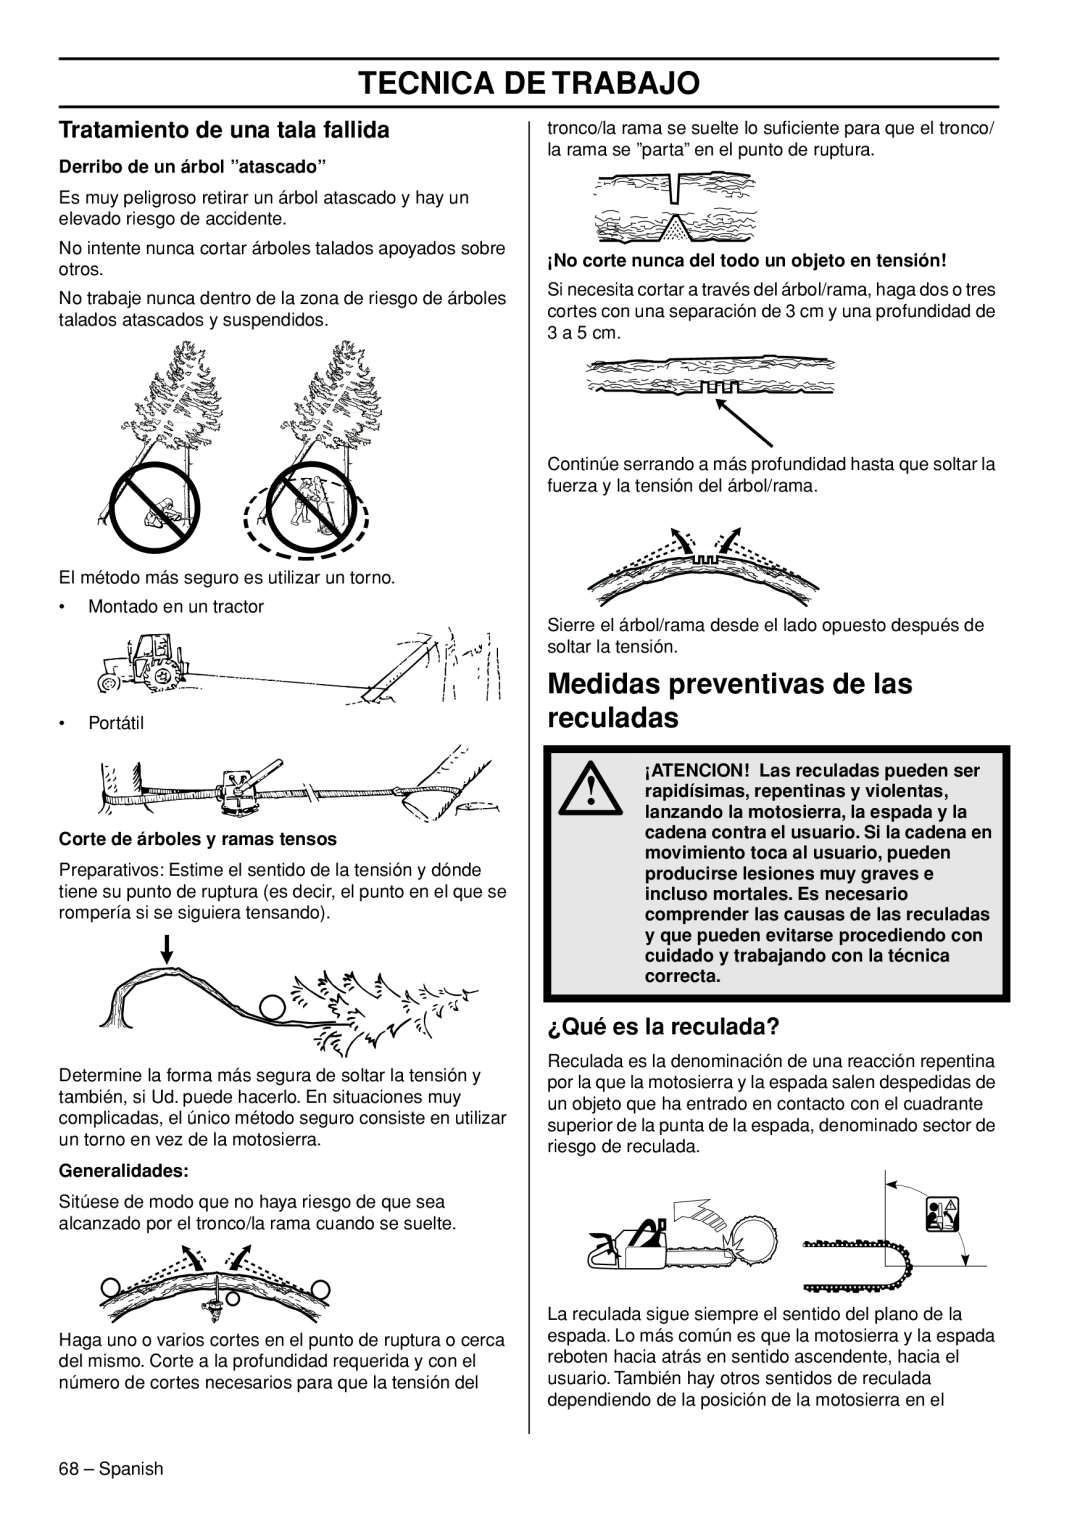 Husqvarna 445e TrioBrake manual Medidas preventivas de las reculadas, Tratamiento de una tala fallida, ¿Qué es la reculada? 